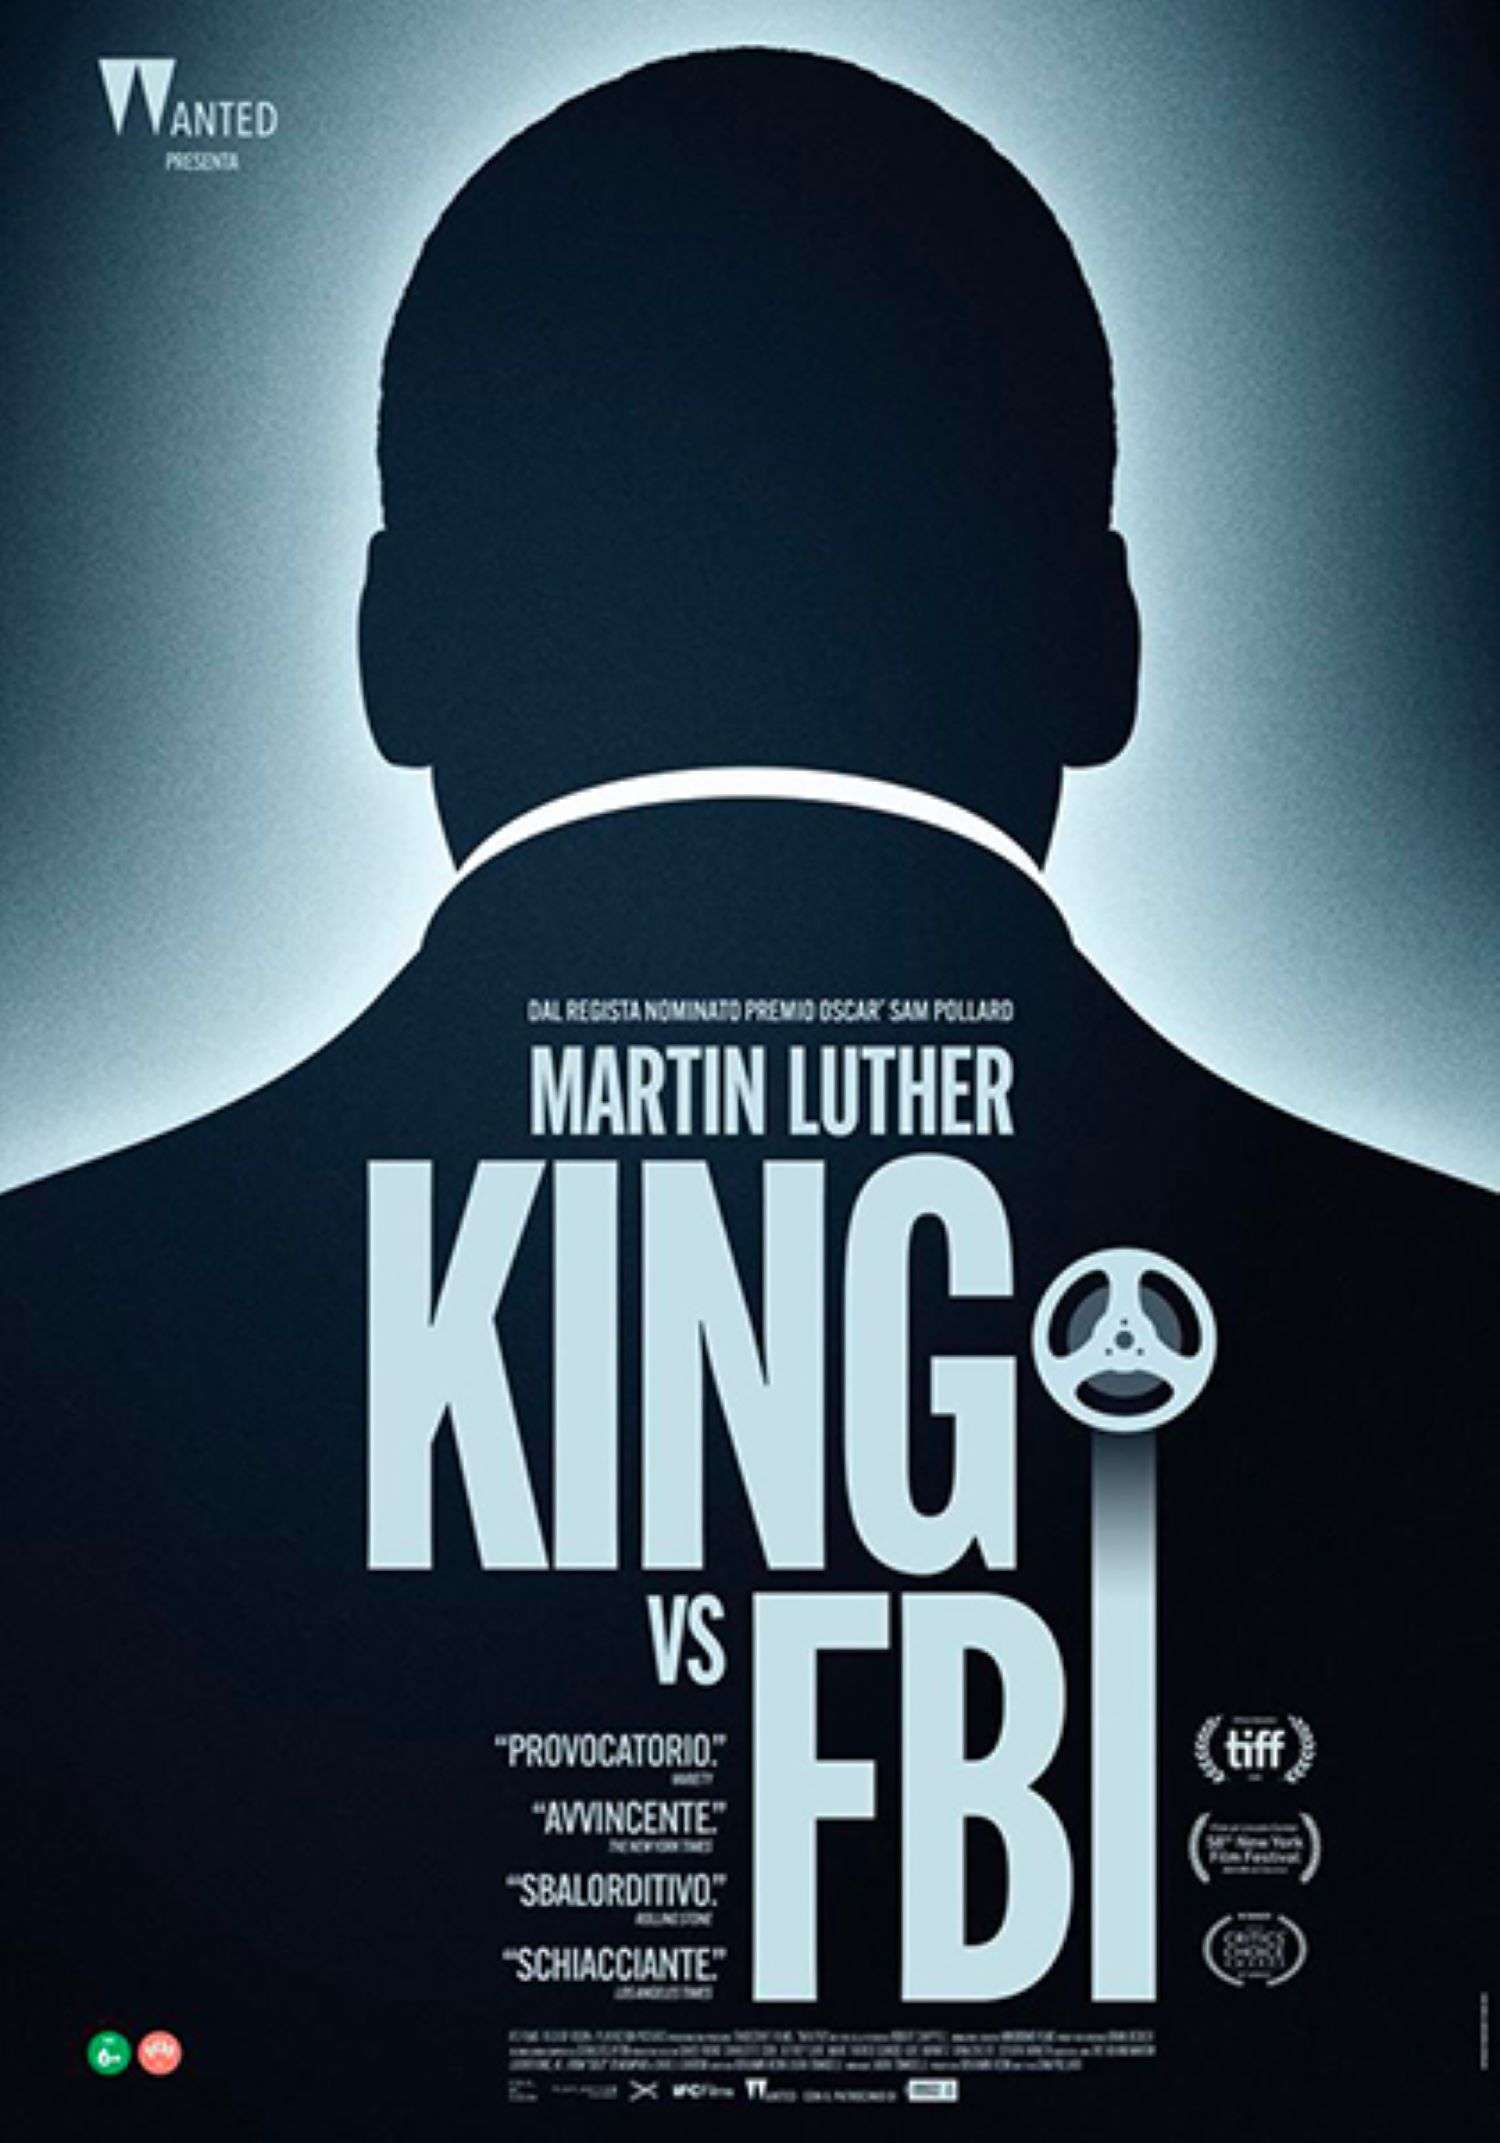 Negli Uci Cinemas arriva il film di Sam Pollard “Martin Luther King vs Fbi”